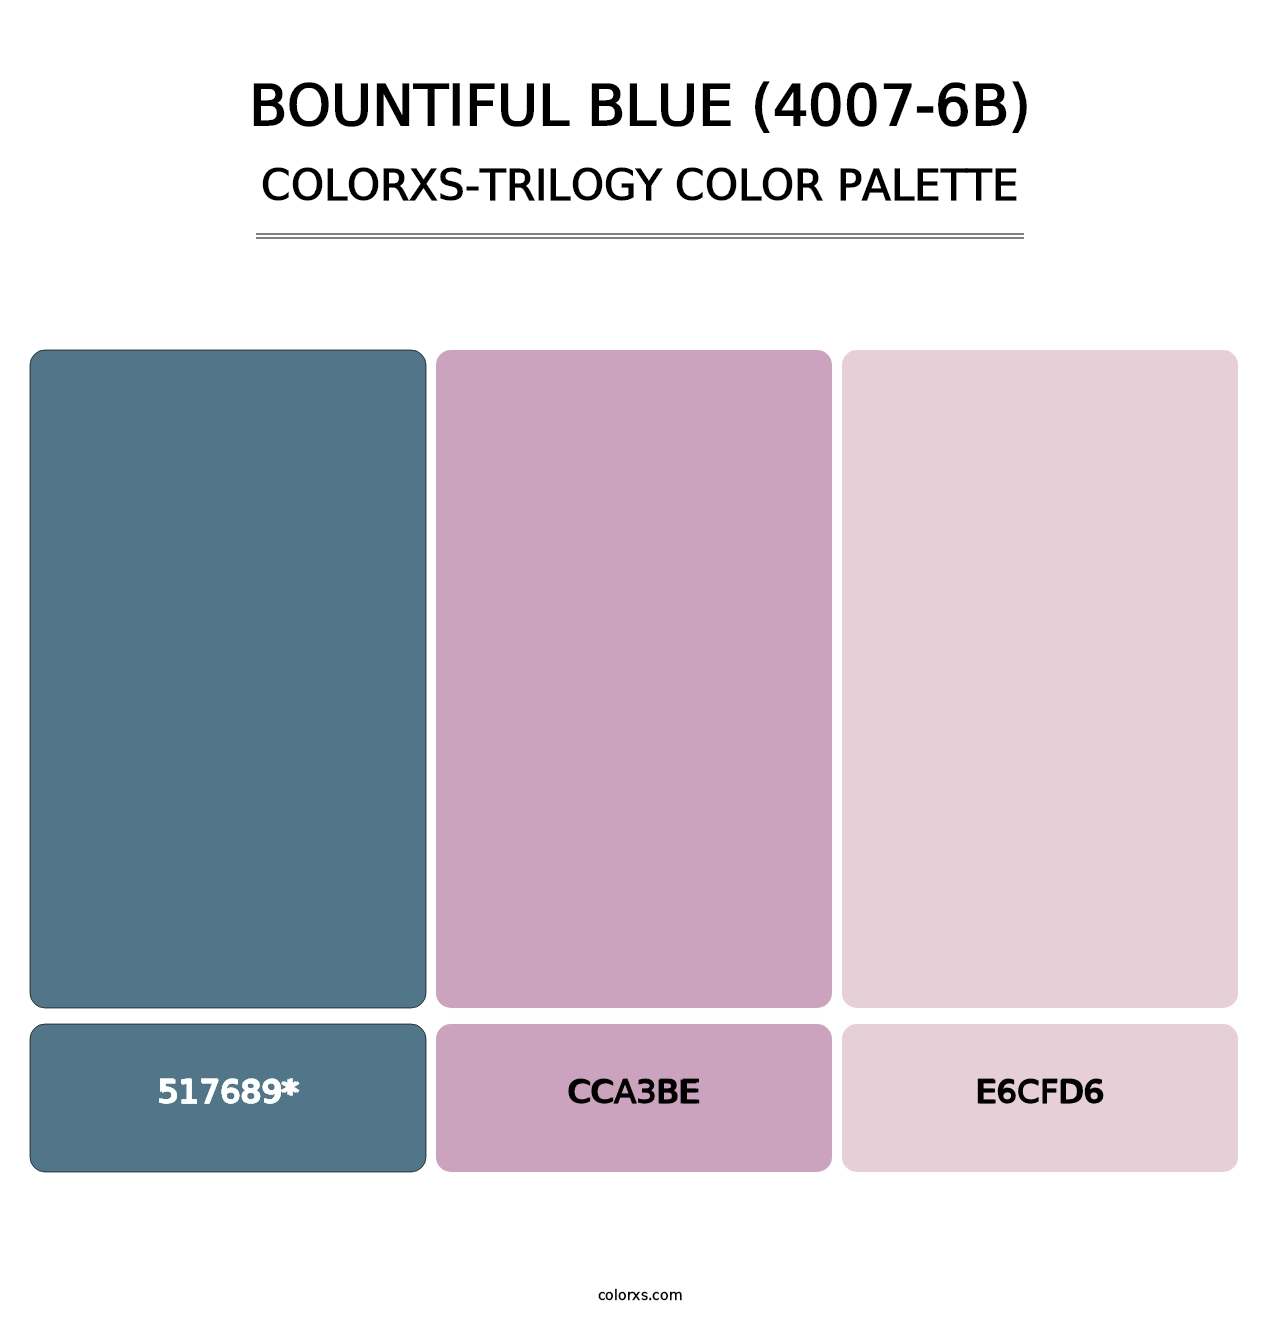 Bountiful Blue (4007-6B) - Colorxs Trilogy Palette